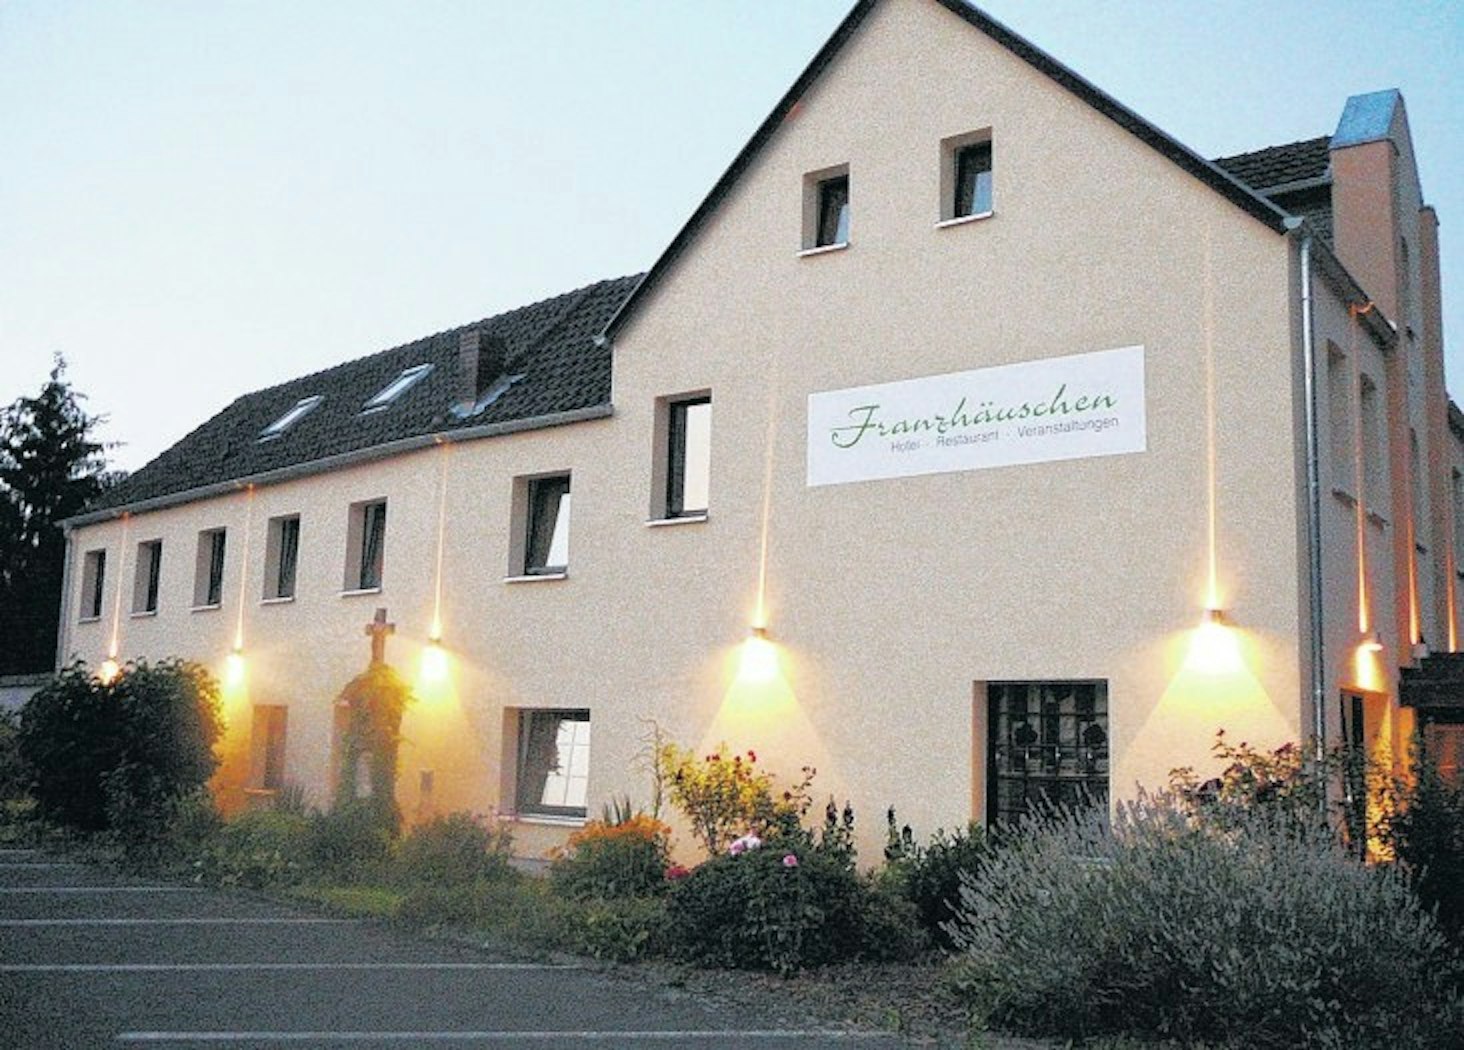 Das Restaurant Franzhäuschen in Lohmar.